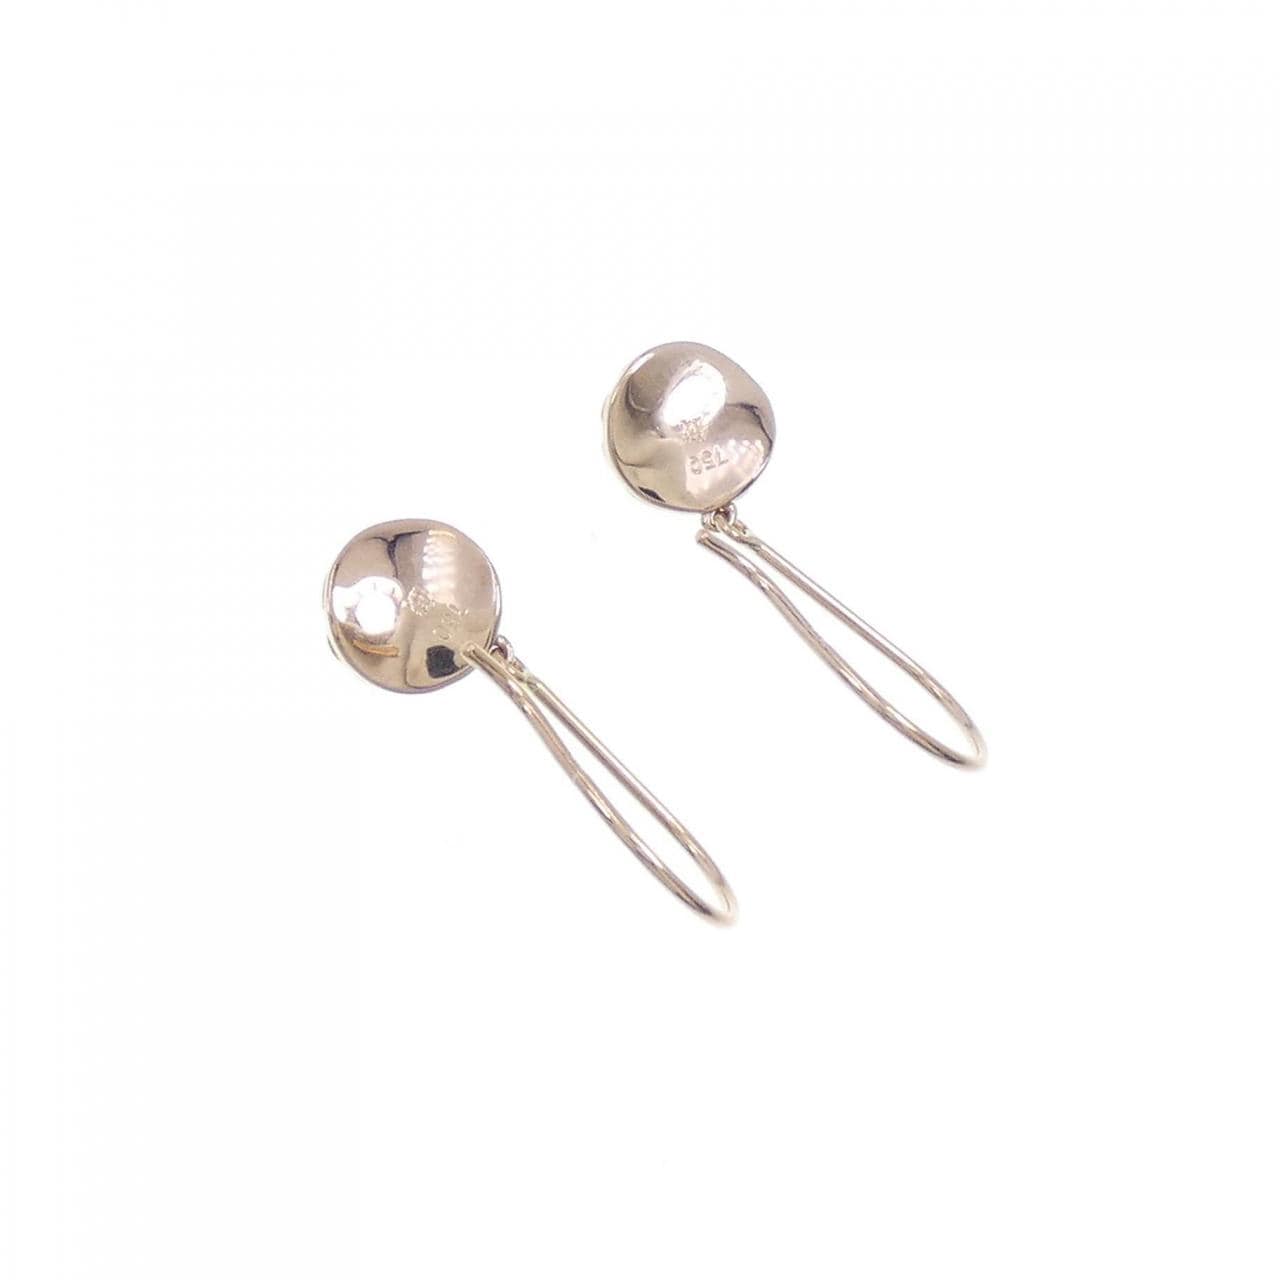 Niwaka K18PG earrings